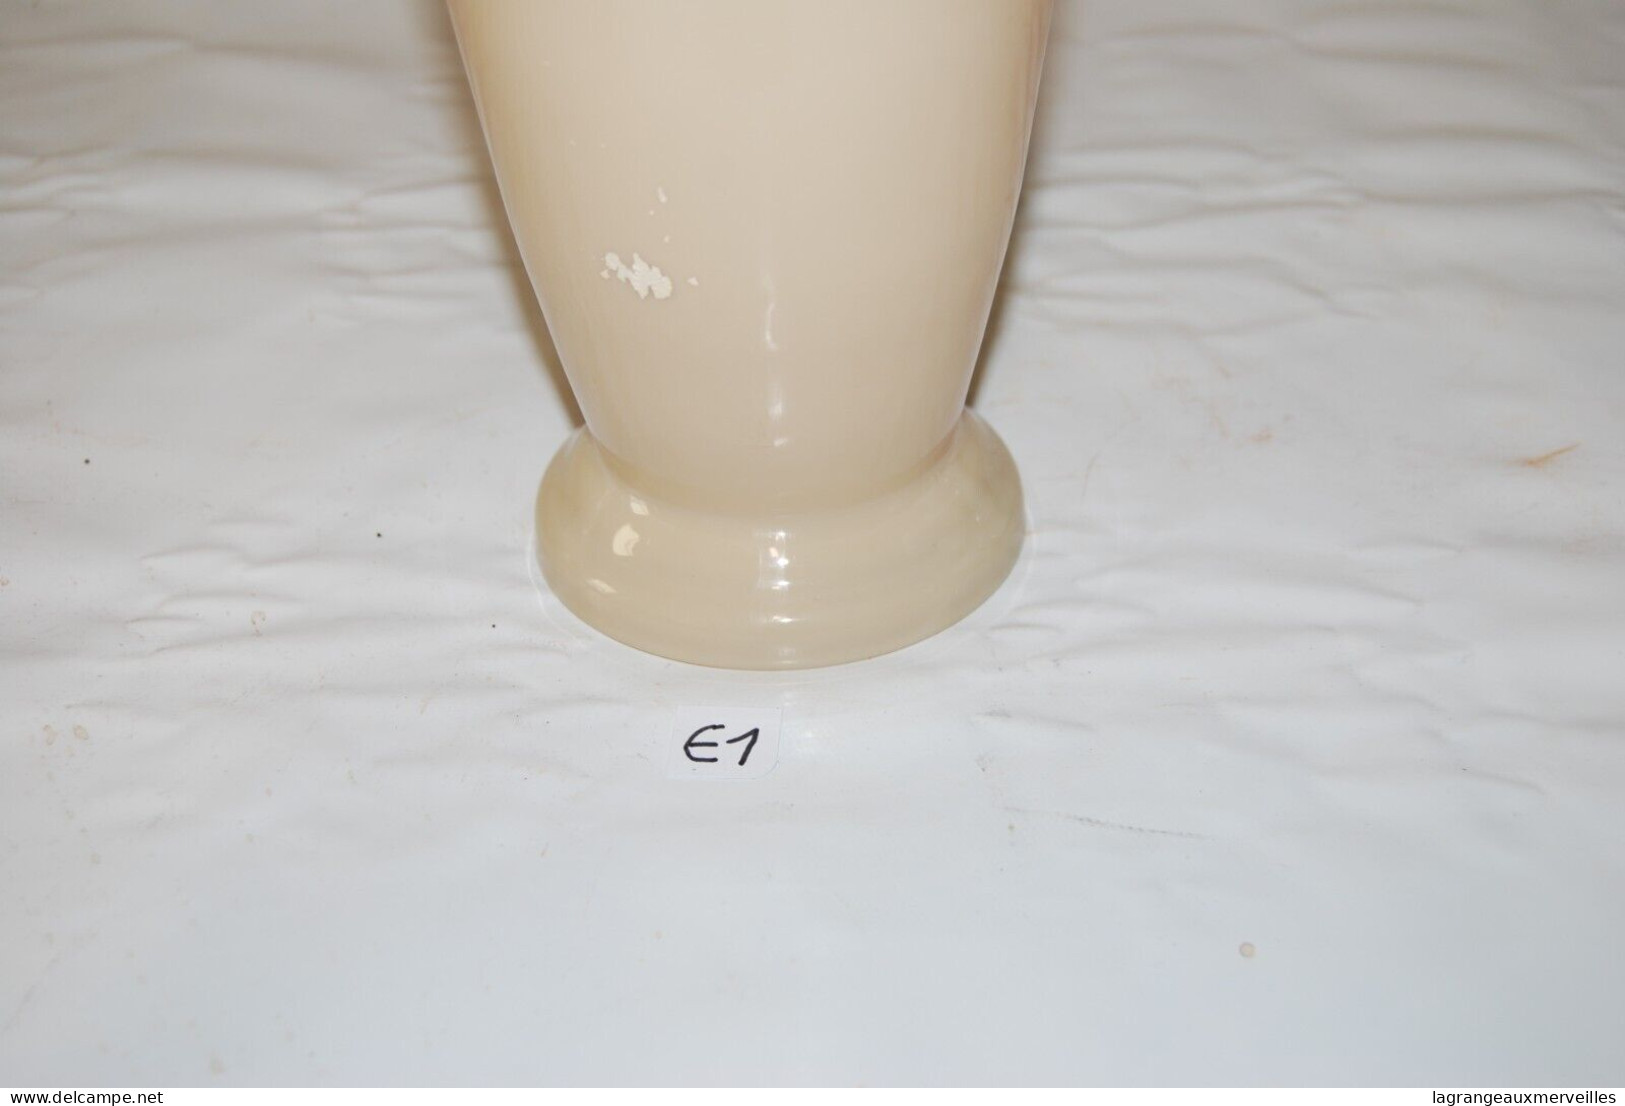 E1 Ancien vase - cruche - vase soliflore